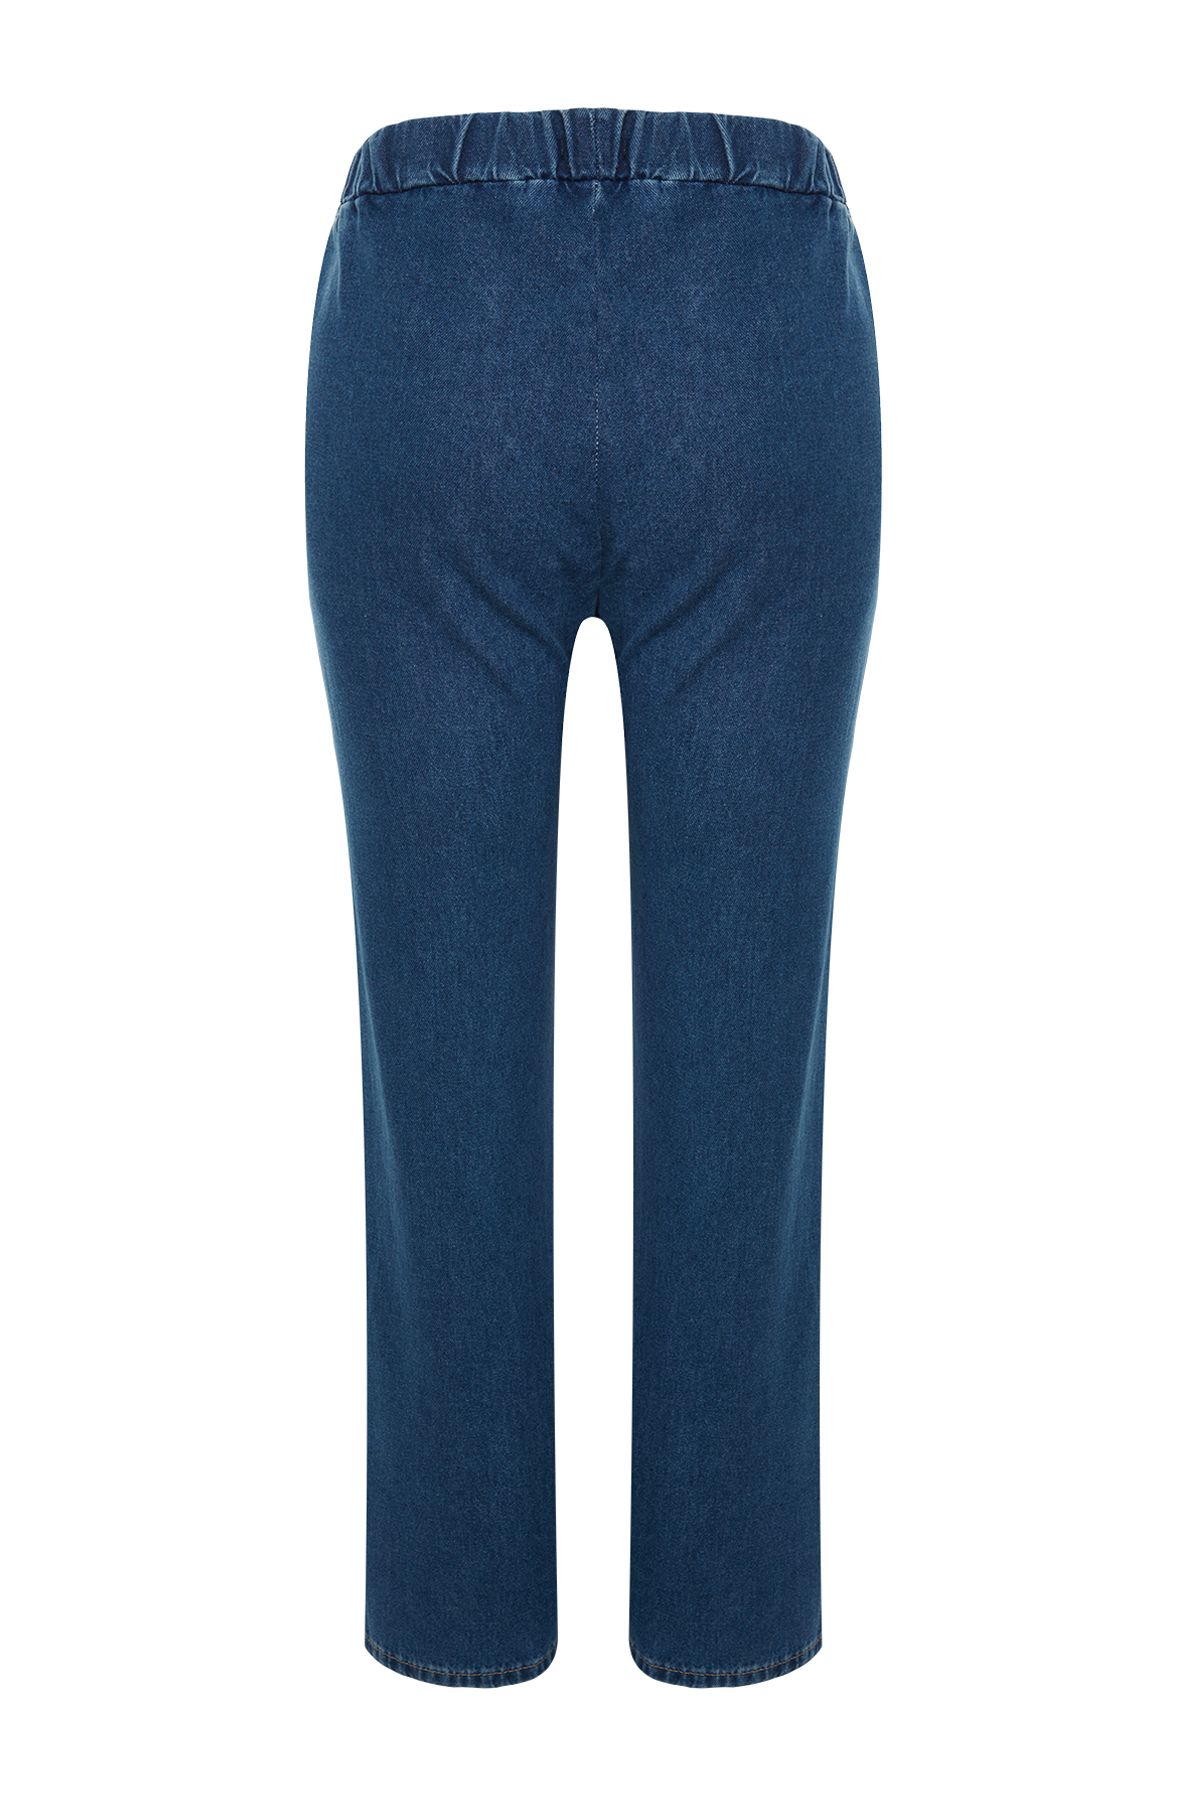 Trendyol Curve Plus Size Jeans - Blue - Wide leg - Trendyol